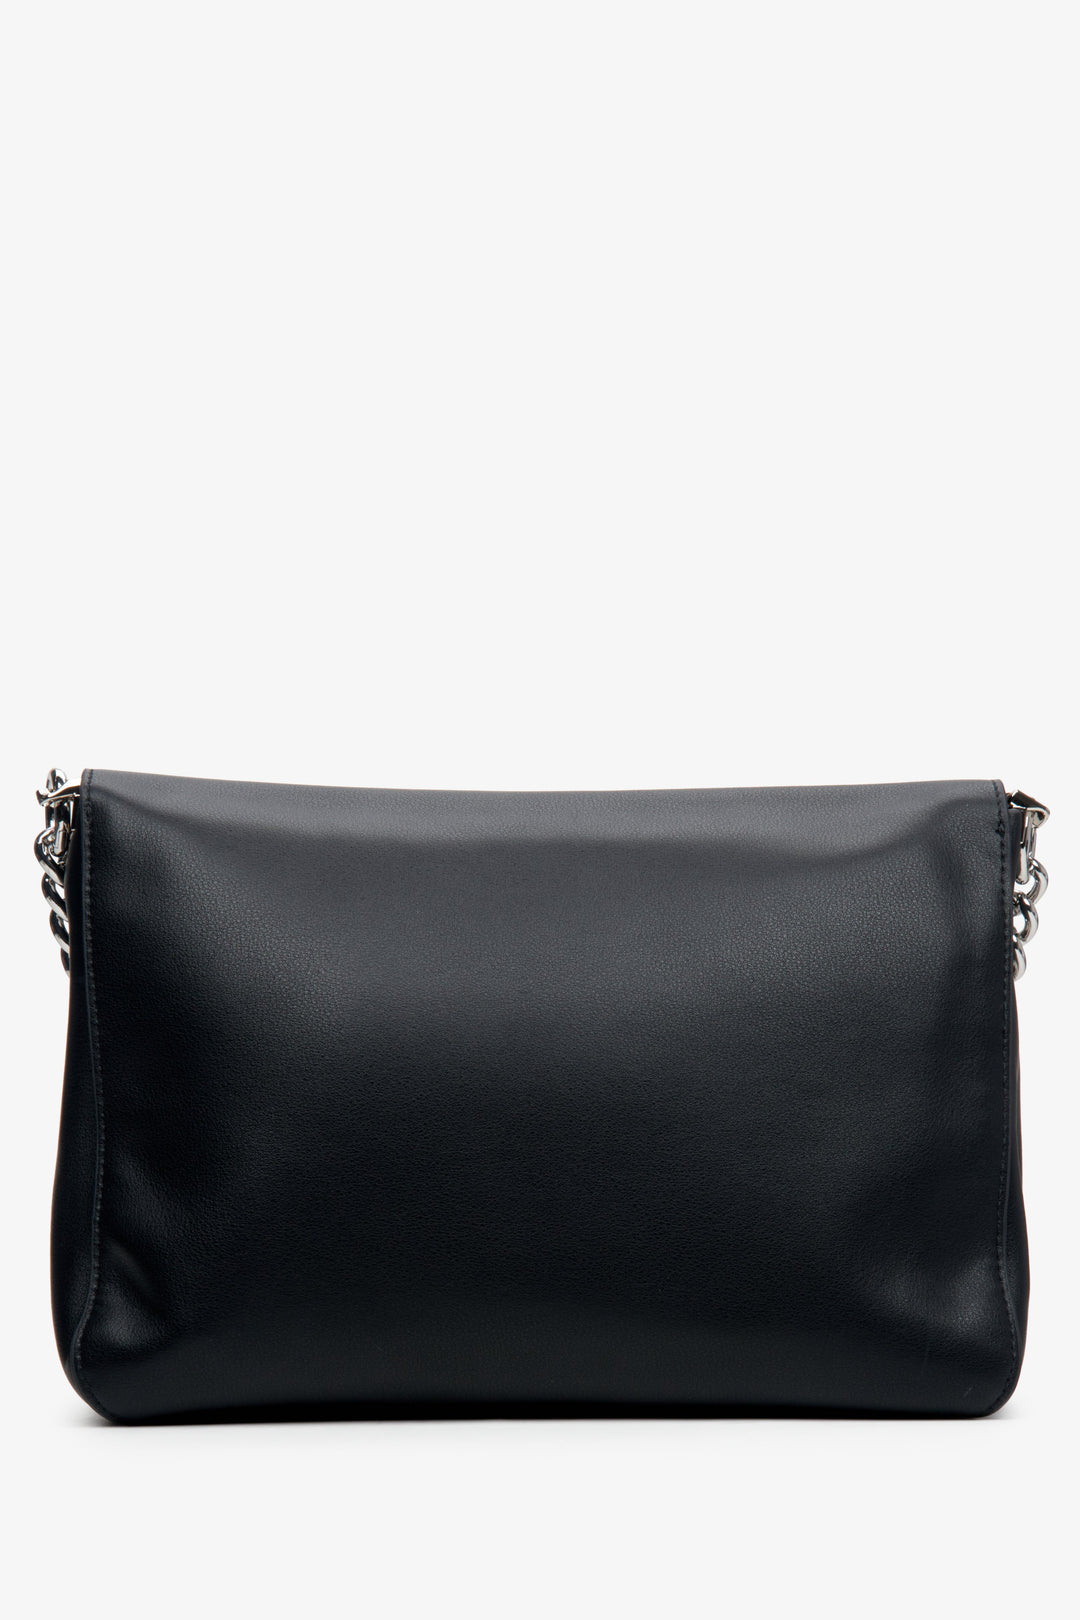 Skórzana torebka listonoszka damska w kolorze czarnym Estro z łańcuszkiem - tył modelu.